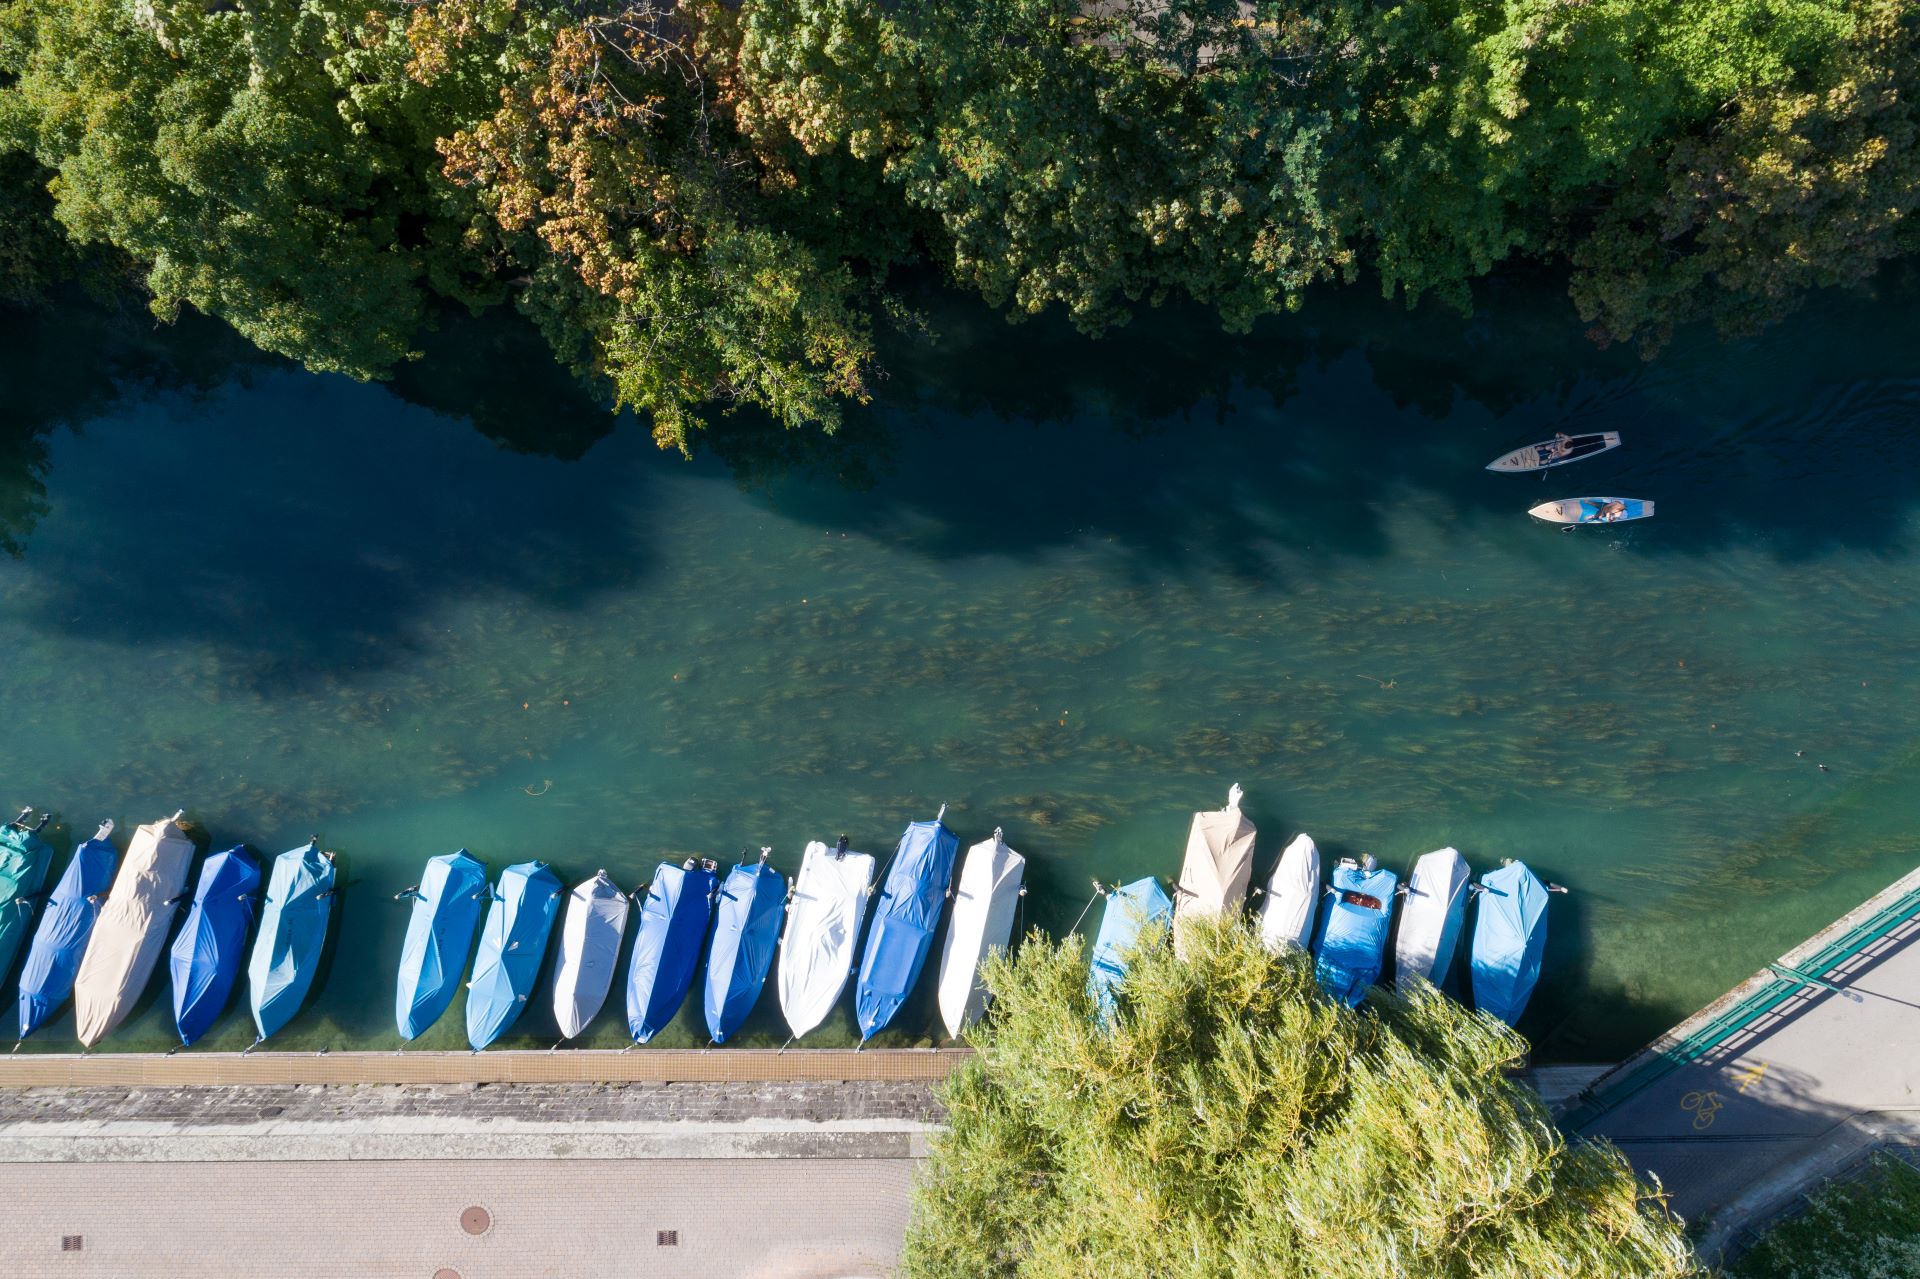 Vue aérienne d'une rive calme avec des bateaux amarrés couverts de bâches bleues et beiges, le long d'une promenade pavée. Deux individus sont vus pratiquant le stand-up paddle sur l'eau, avec des arbres luxuriants bordant la rivière.